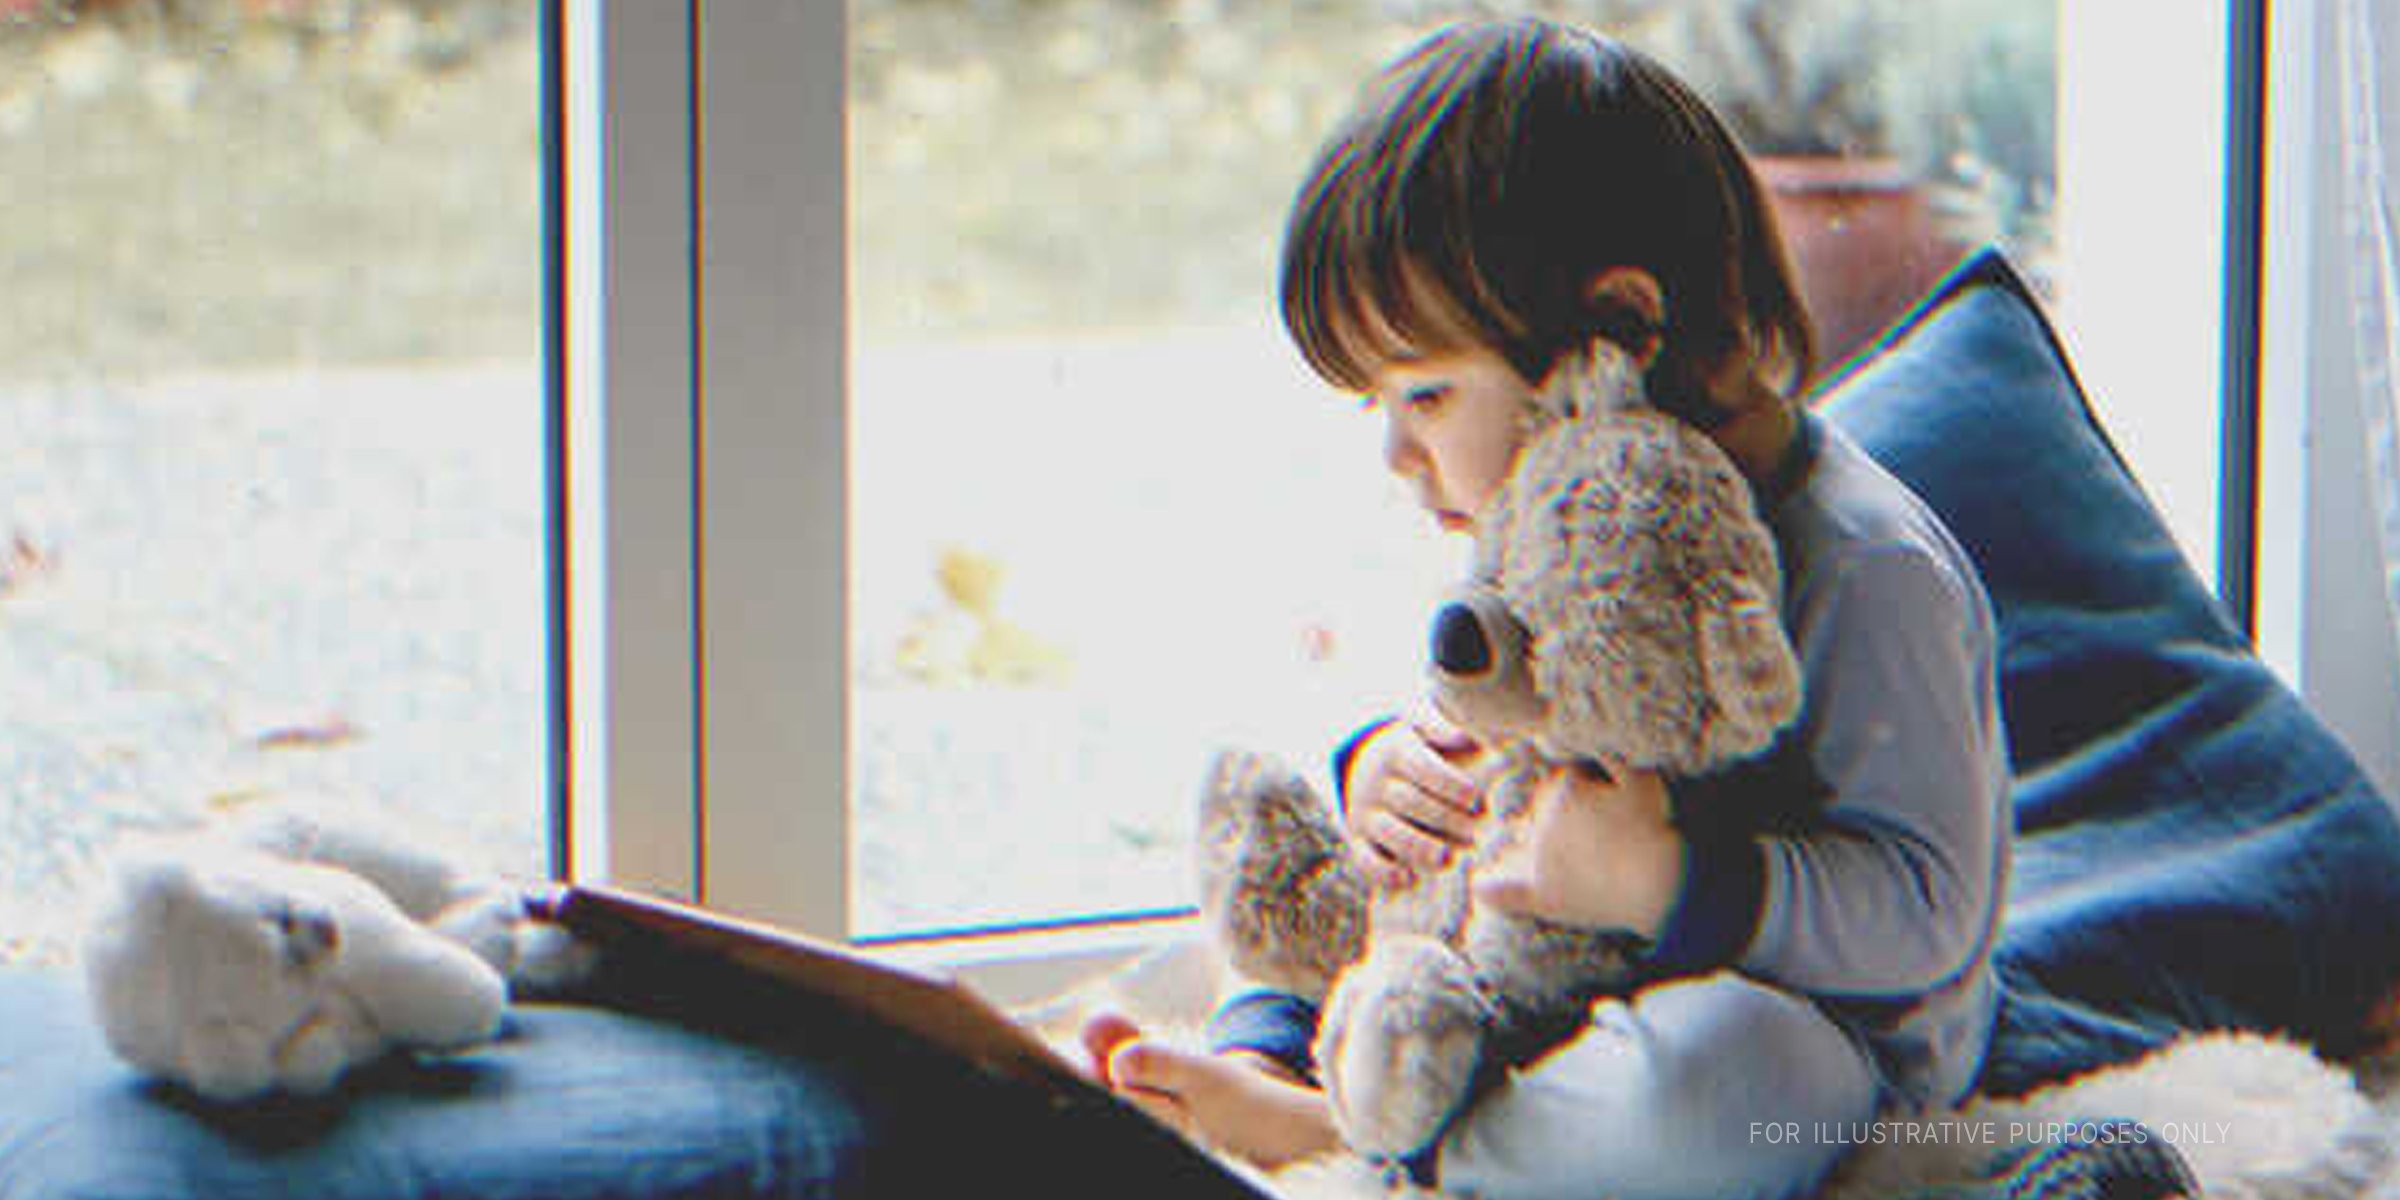 Ein kleiner Junge. | Quelle: Shutterstock